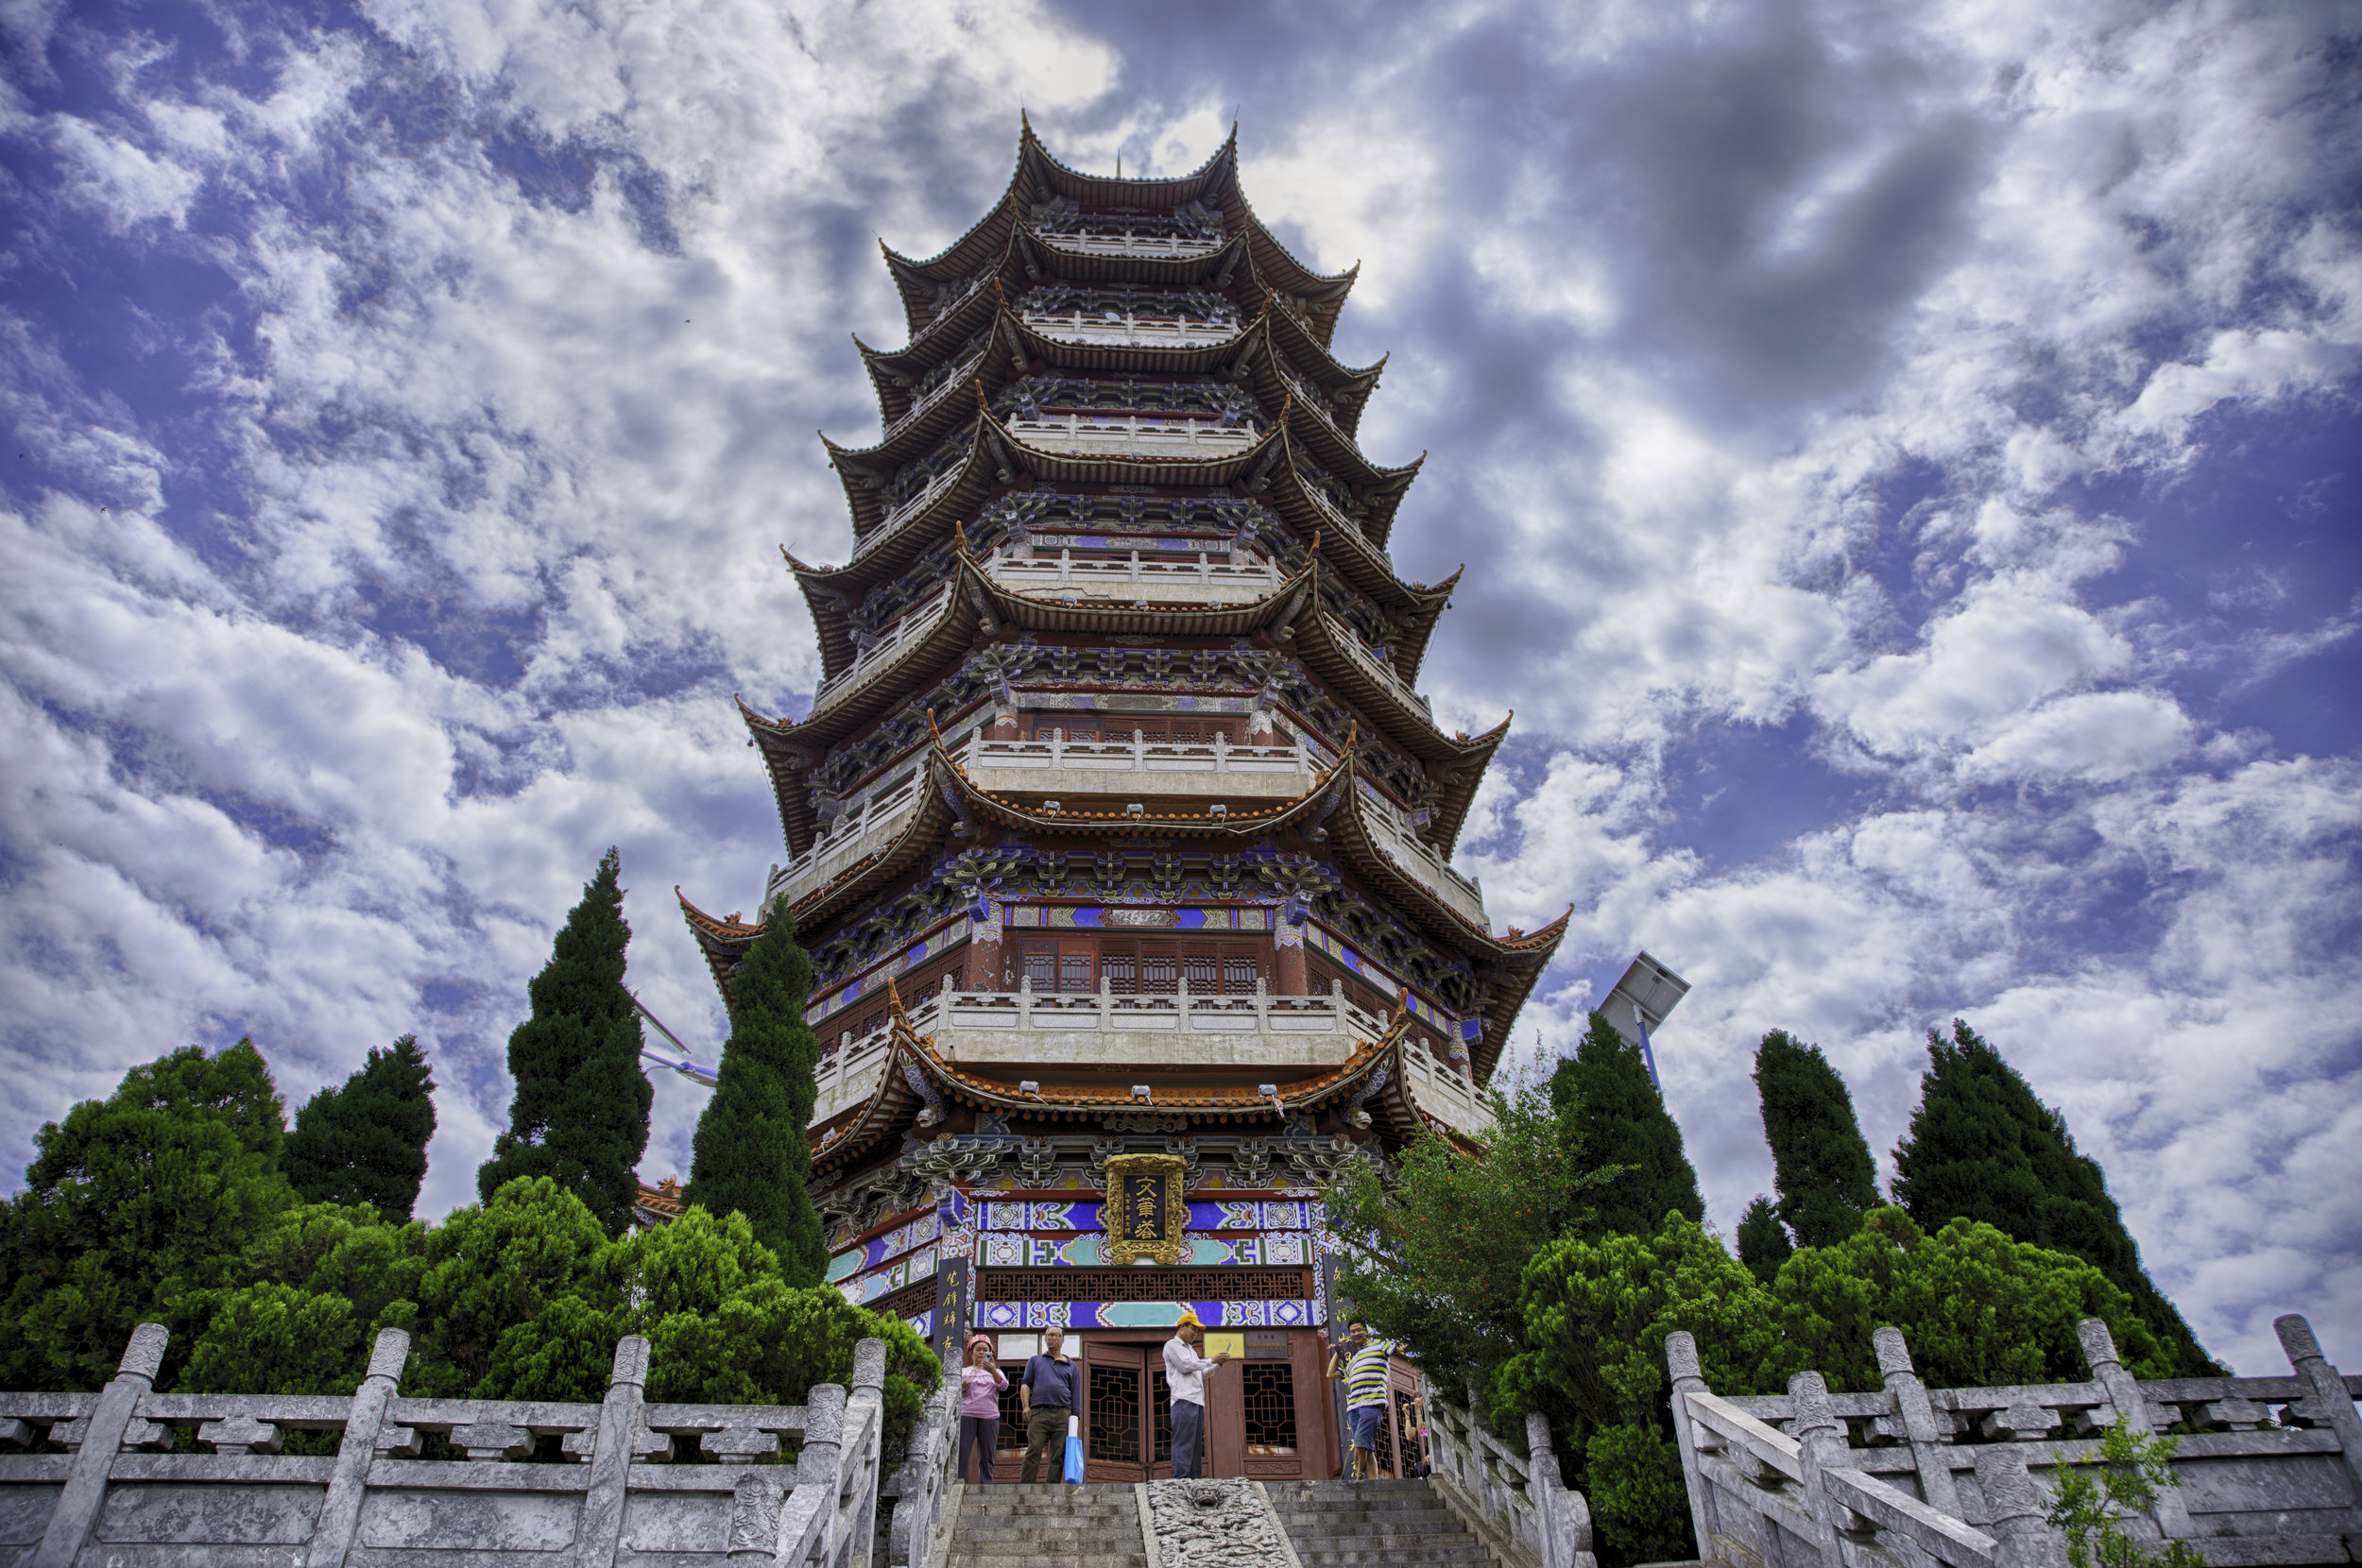  Pagoda in Wenshan, China 